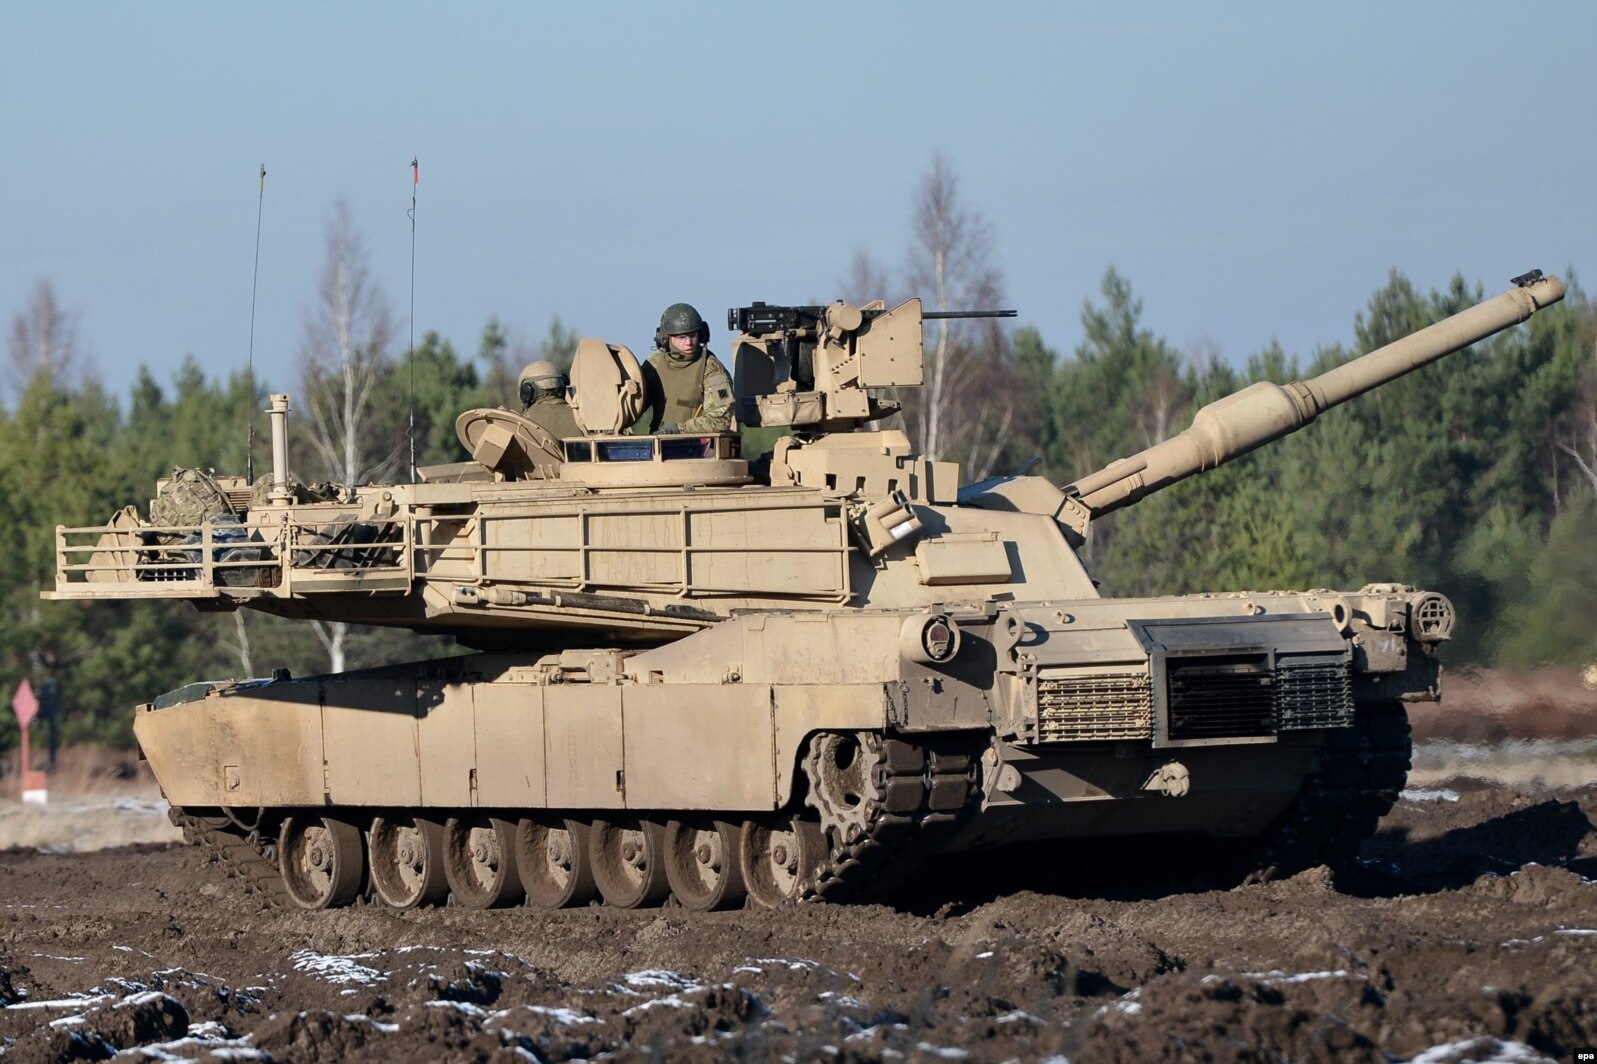 Një tank Leopard 2A4 i ushtrisë polake, gjatë manovrave të përbashkëta Poloni-SHBA, më 2015.